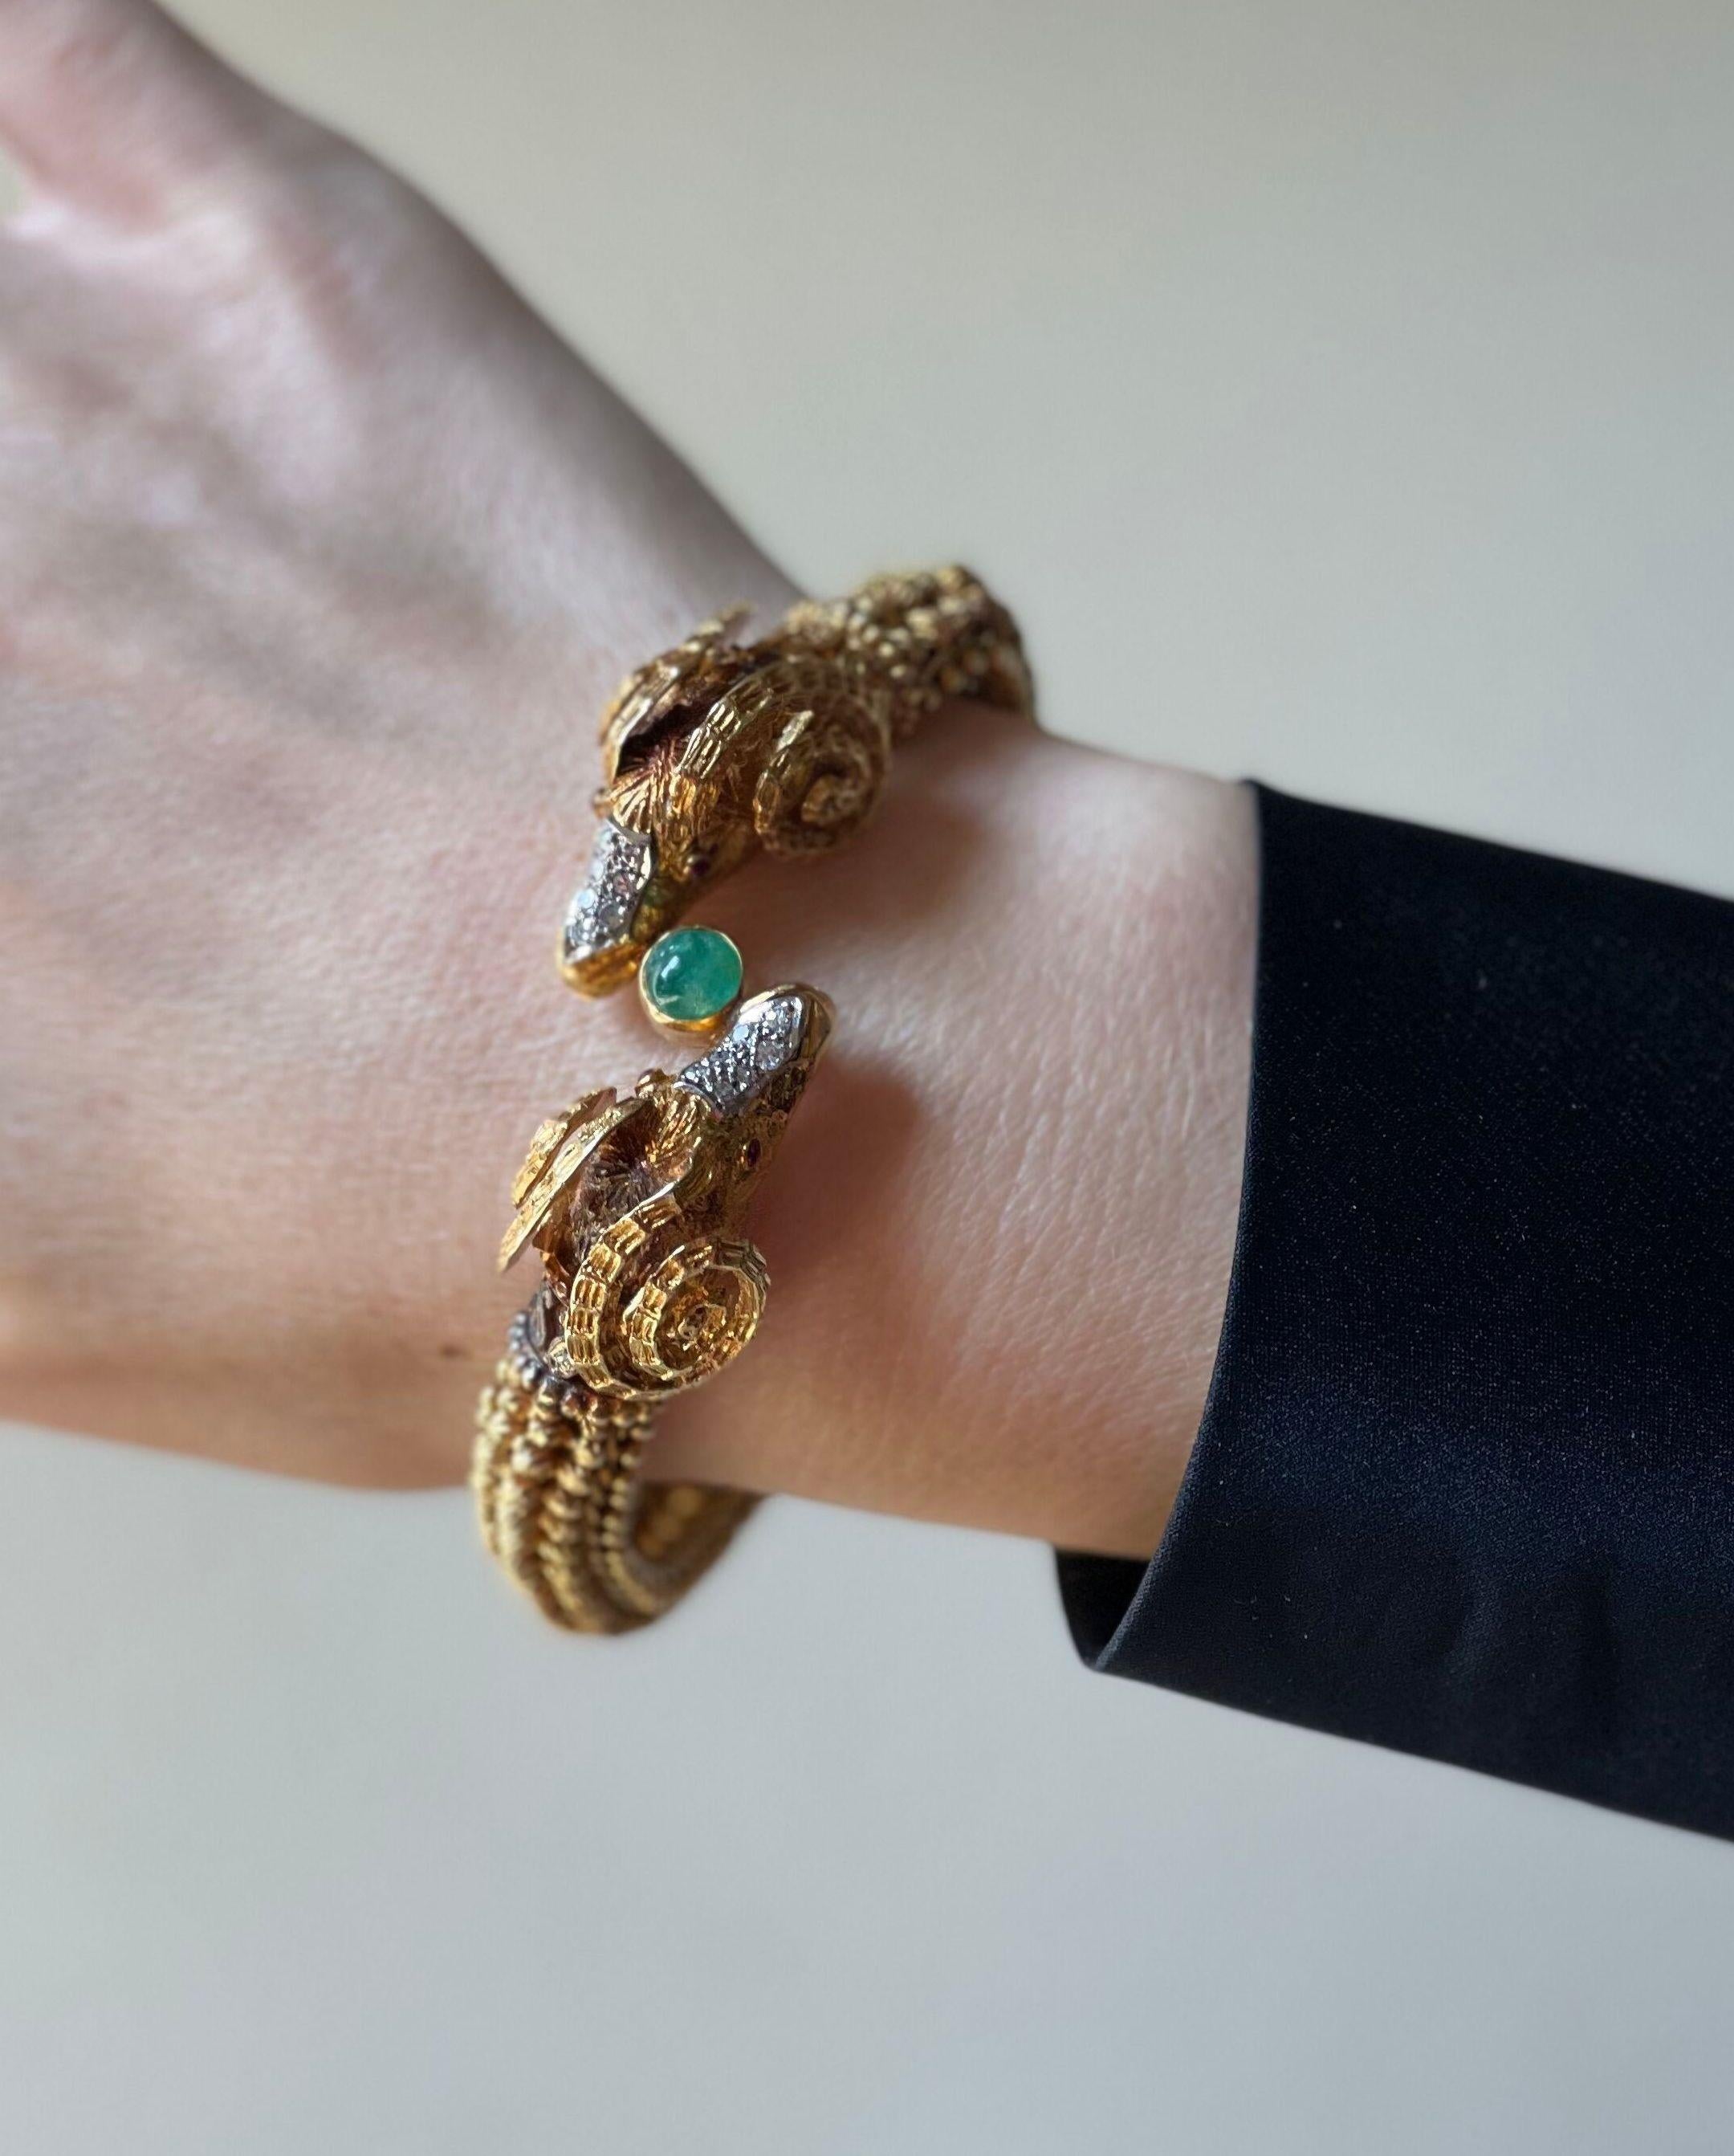 Impressionnant bracelet en or 18k de fabrication grecque, présentant deux têtes de bélier, ornées d'un cabochon d'émeraude, d'yeux de rubis et d'environ 0,30ctw de diamants H/Si. Le bracelet convient à un poignet de taille moyenne  - environ